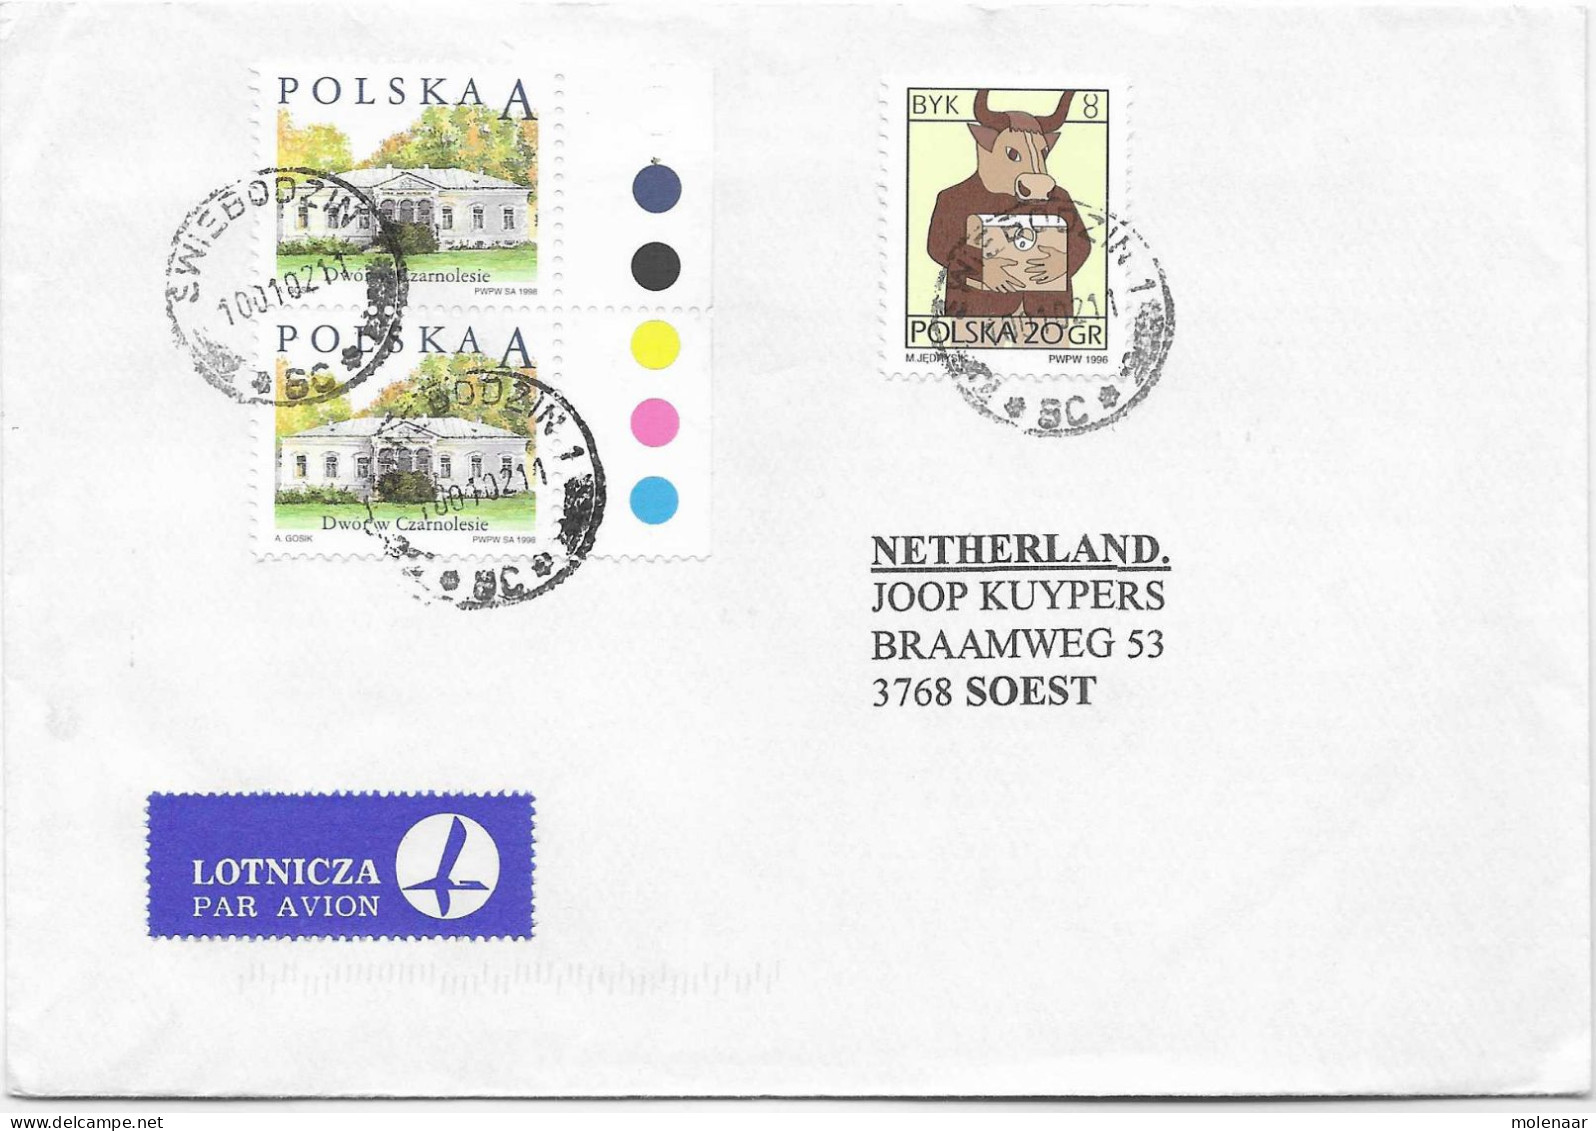 Postzegels > Europa > Polen > 1944-.... Republiek > 2001-10 > Brief Uit 2002 Met 3 Postzegels (17128) - Lettres & Documents